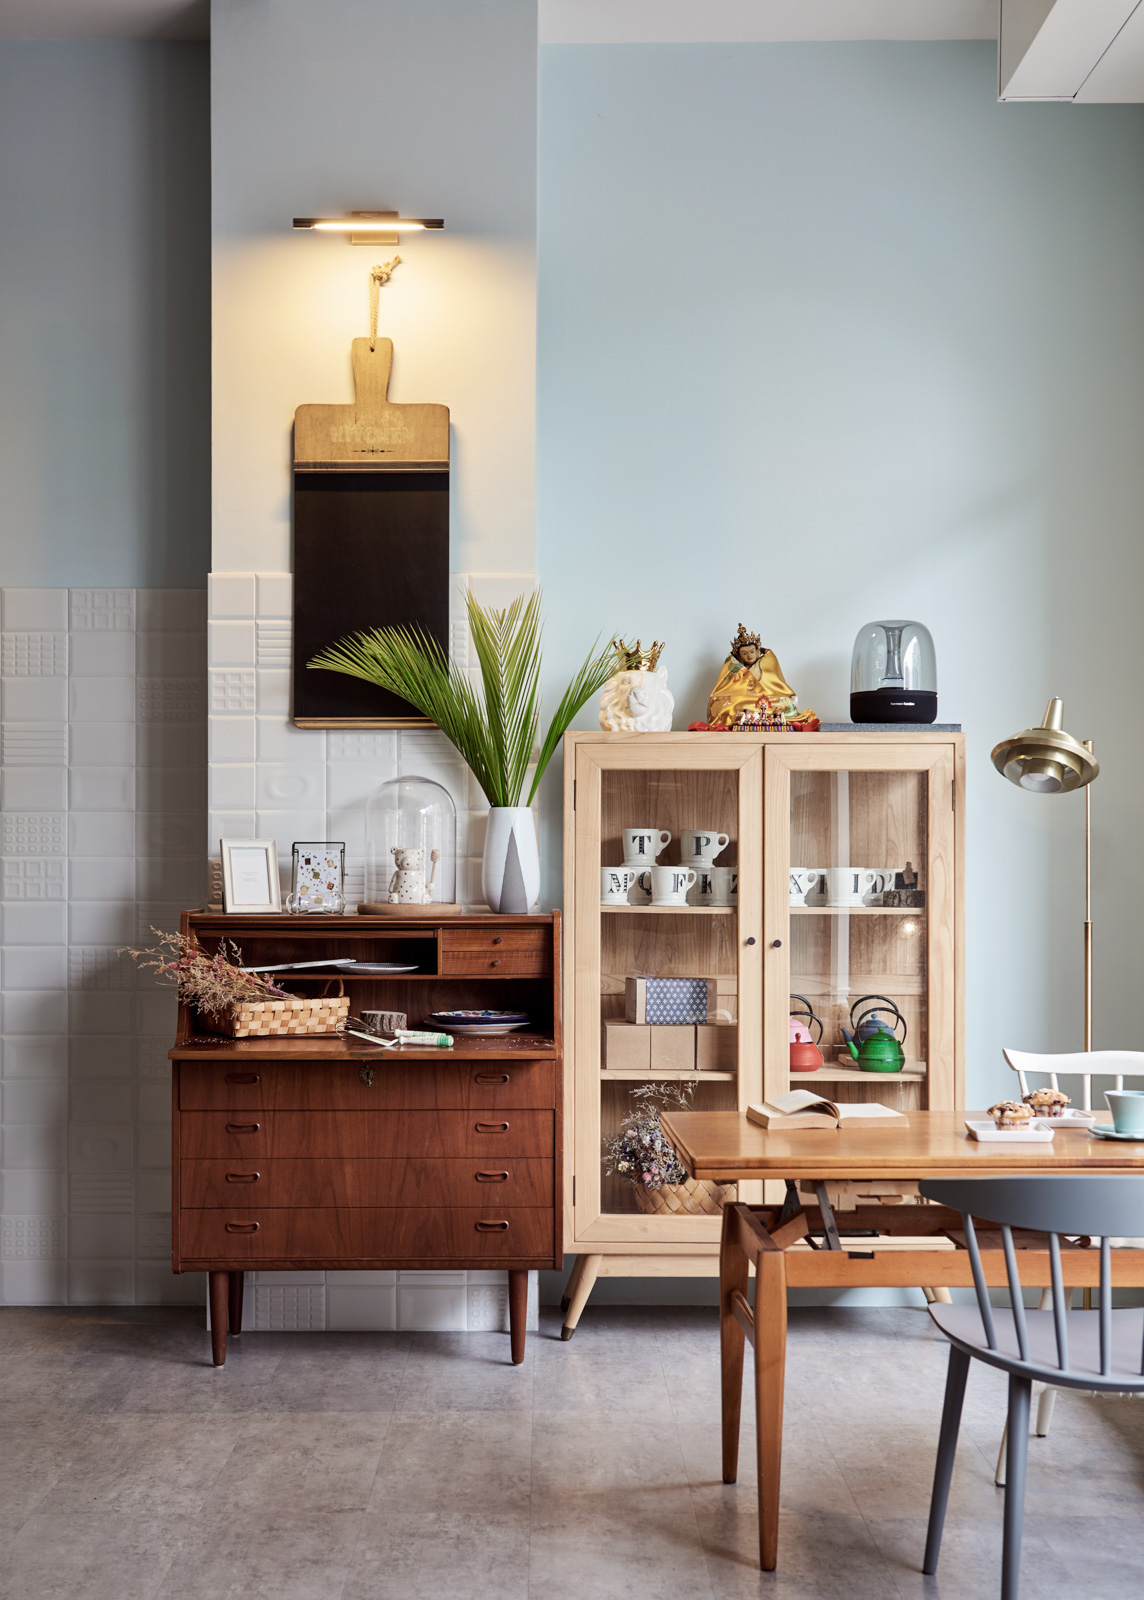 FULL HOUSE  HOME BAKERY烘焙空间| 摩尼视觉分享